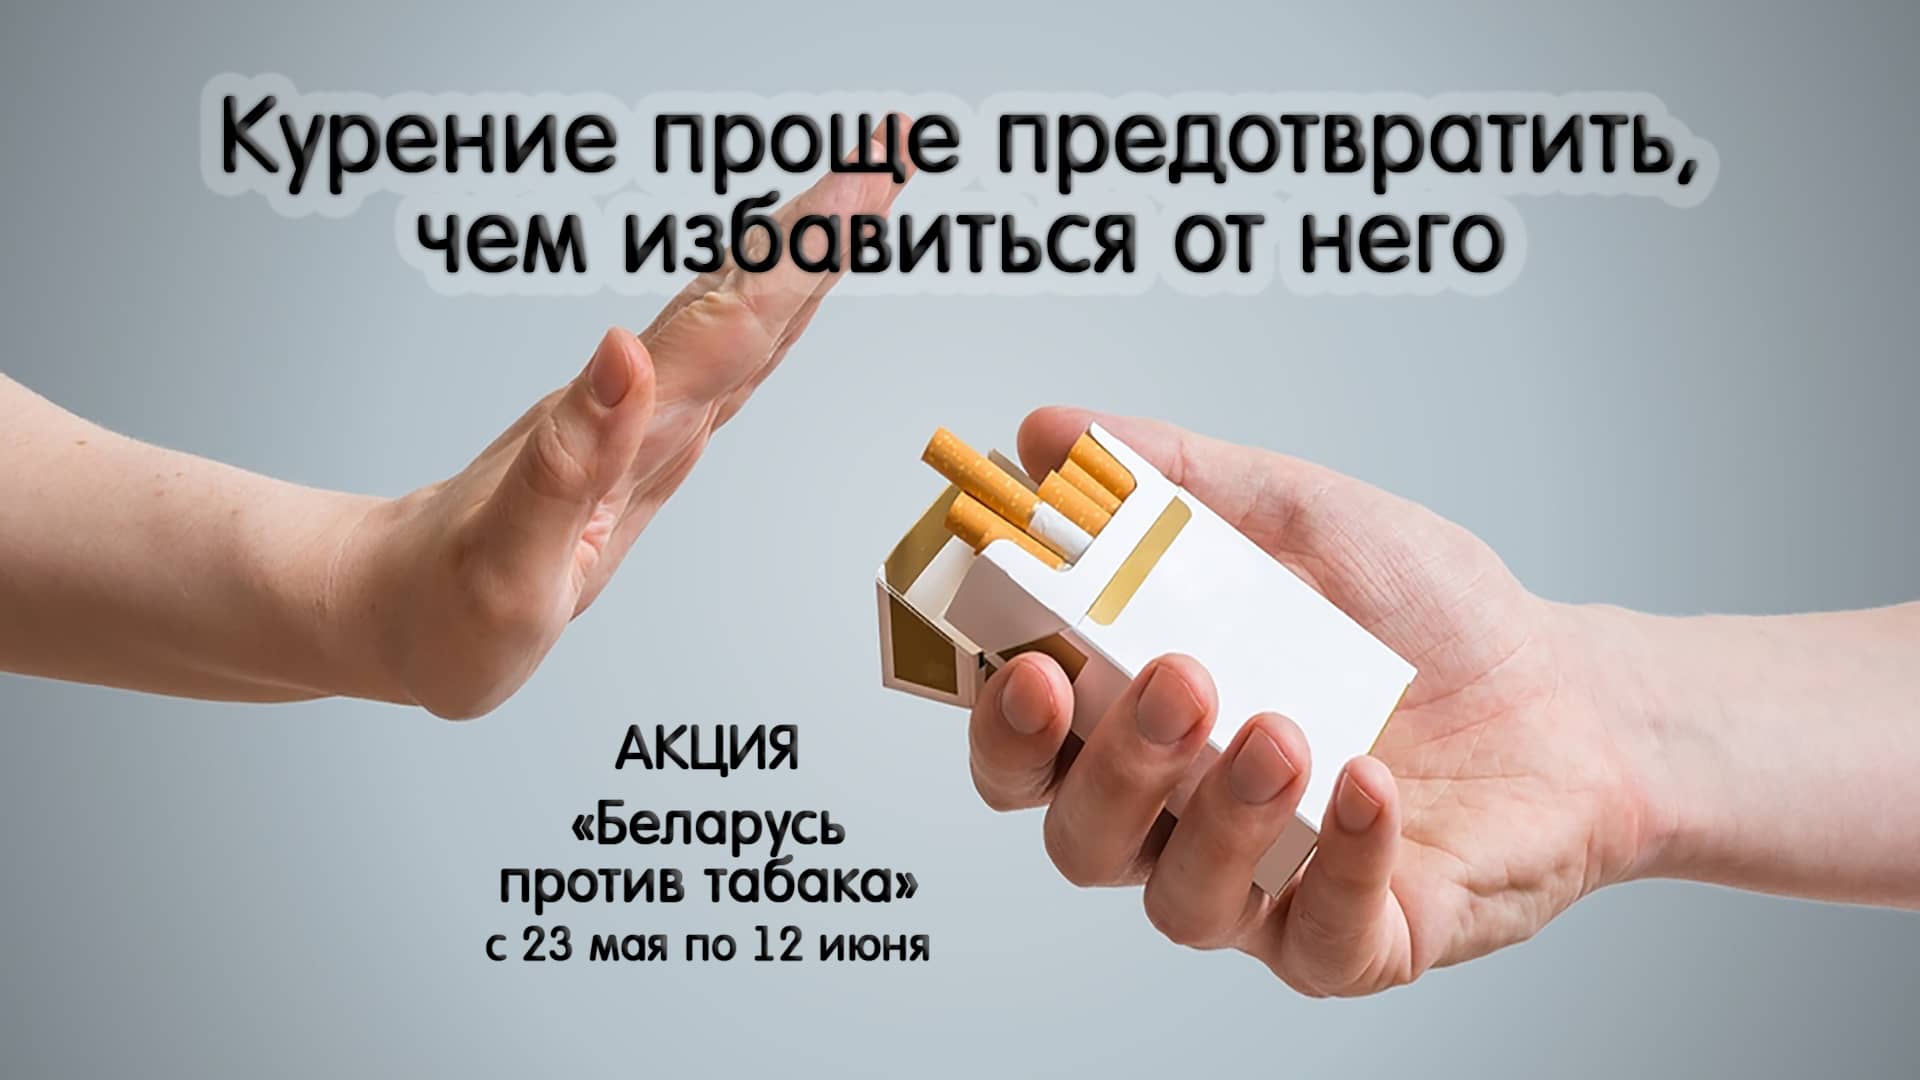 Акция Беларусь против табака